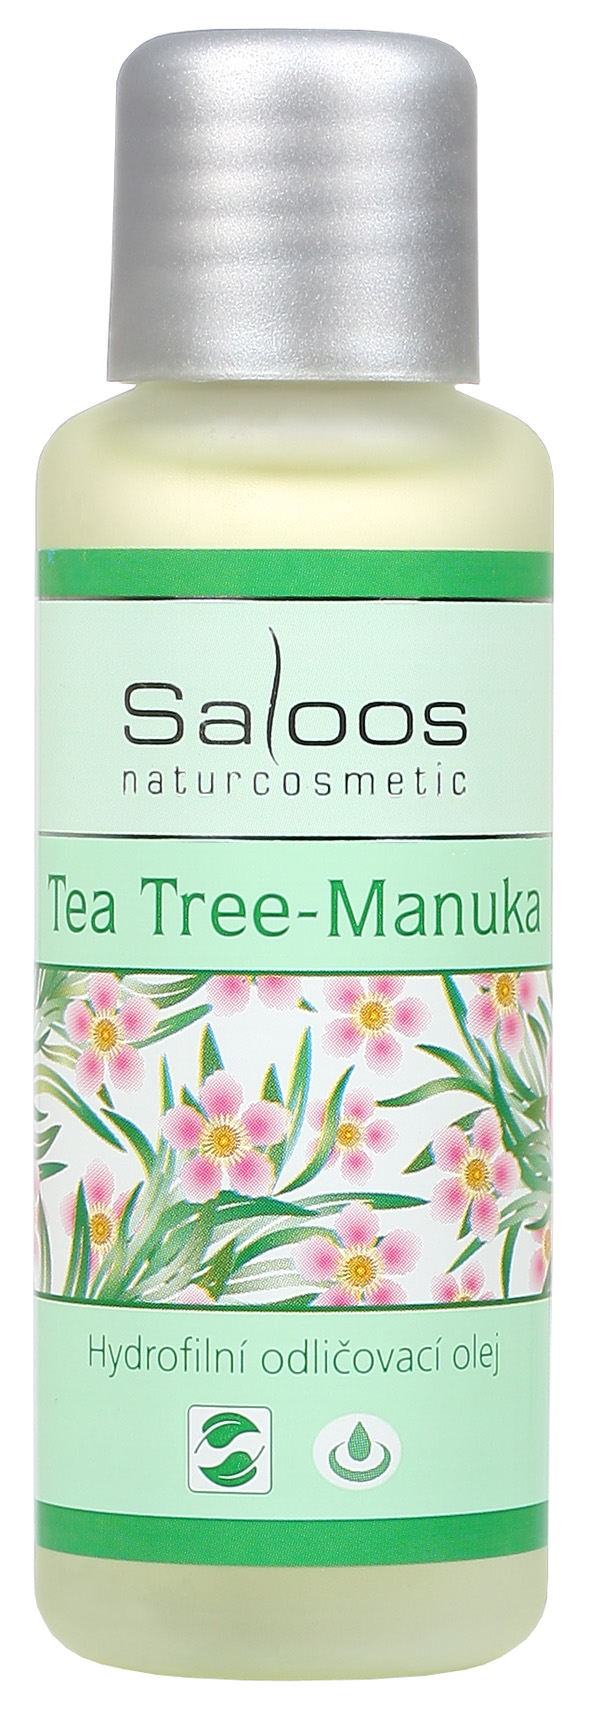 Saloos Make-up Removal Oil Tea Tree-Manuka čistiaci a odličovací olej 50 ml